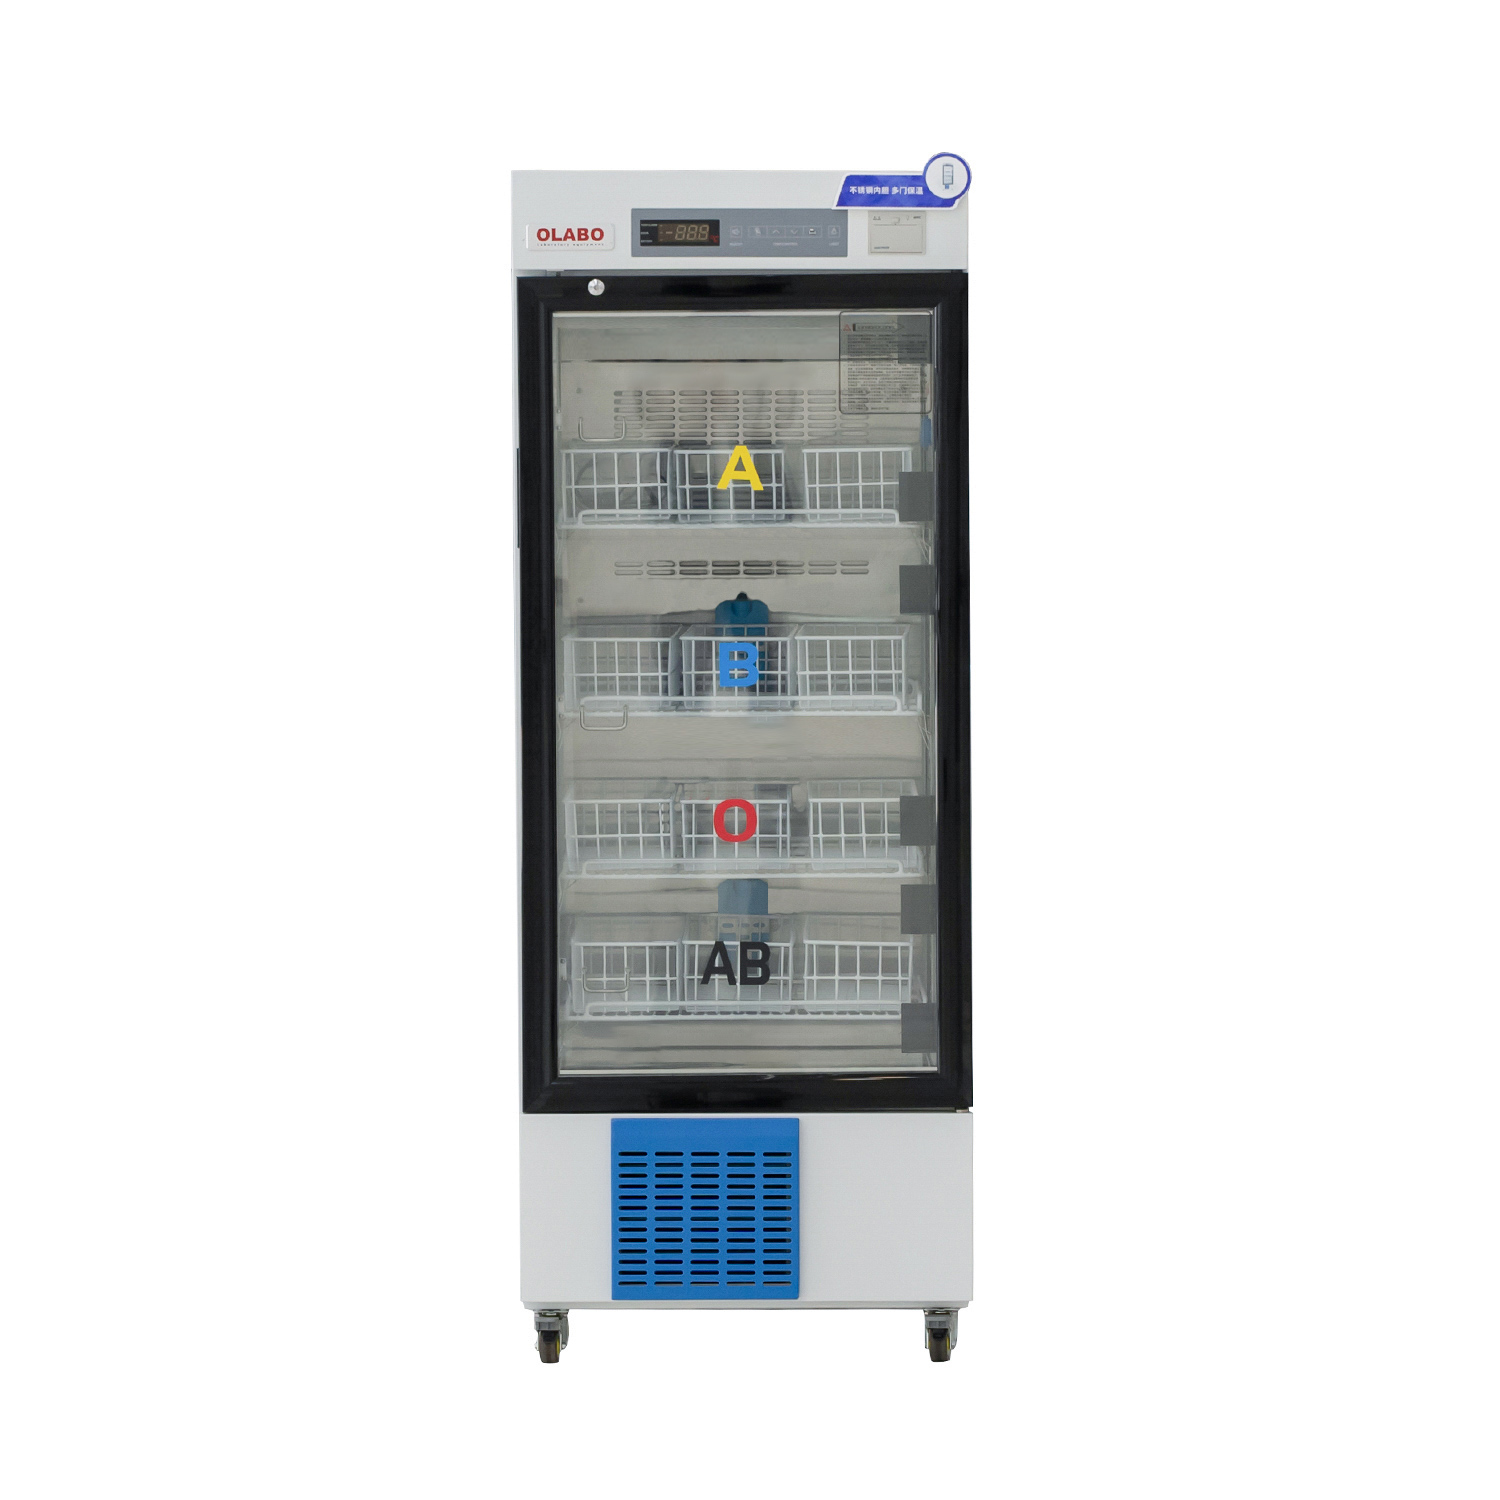 4 Degrees Celsius Blood Bank Refrigerator Para sa Laboratory